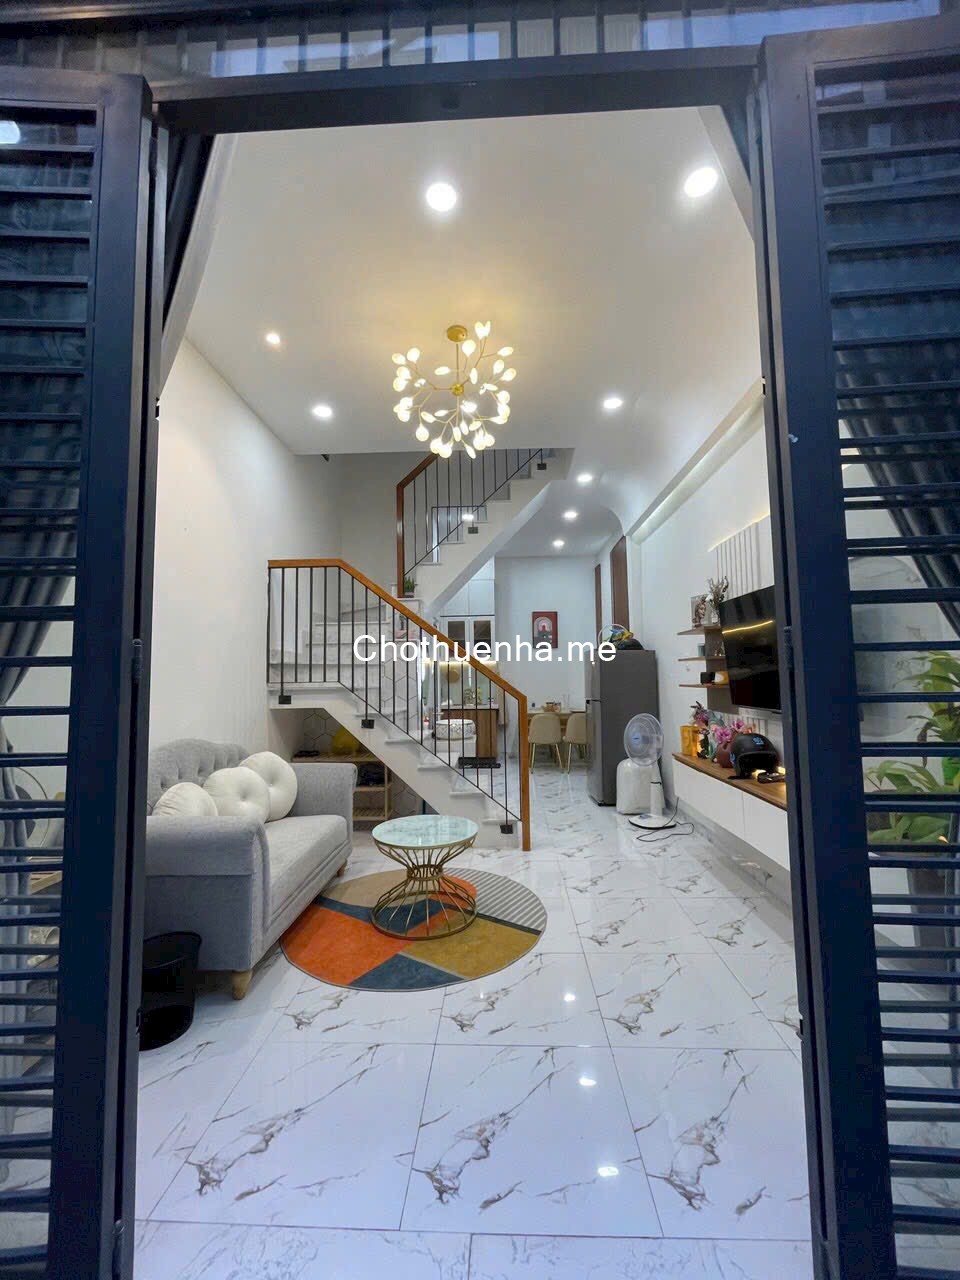 Cho thuê nhà đường số 59 P14 Gò Vấp - Ngay chợ Thạch Đà - Full nội thất nhà mới đẹp